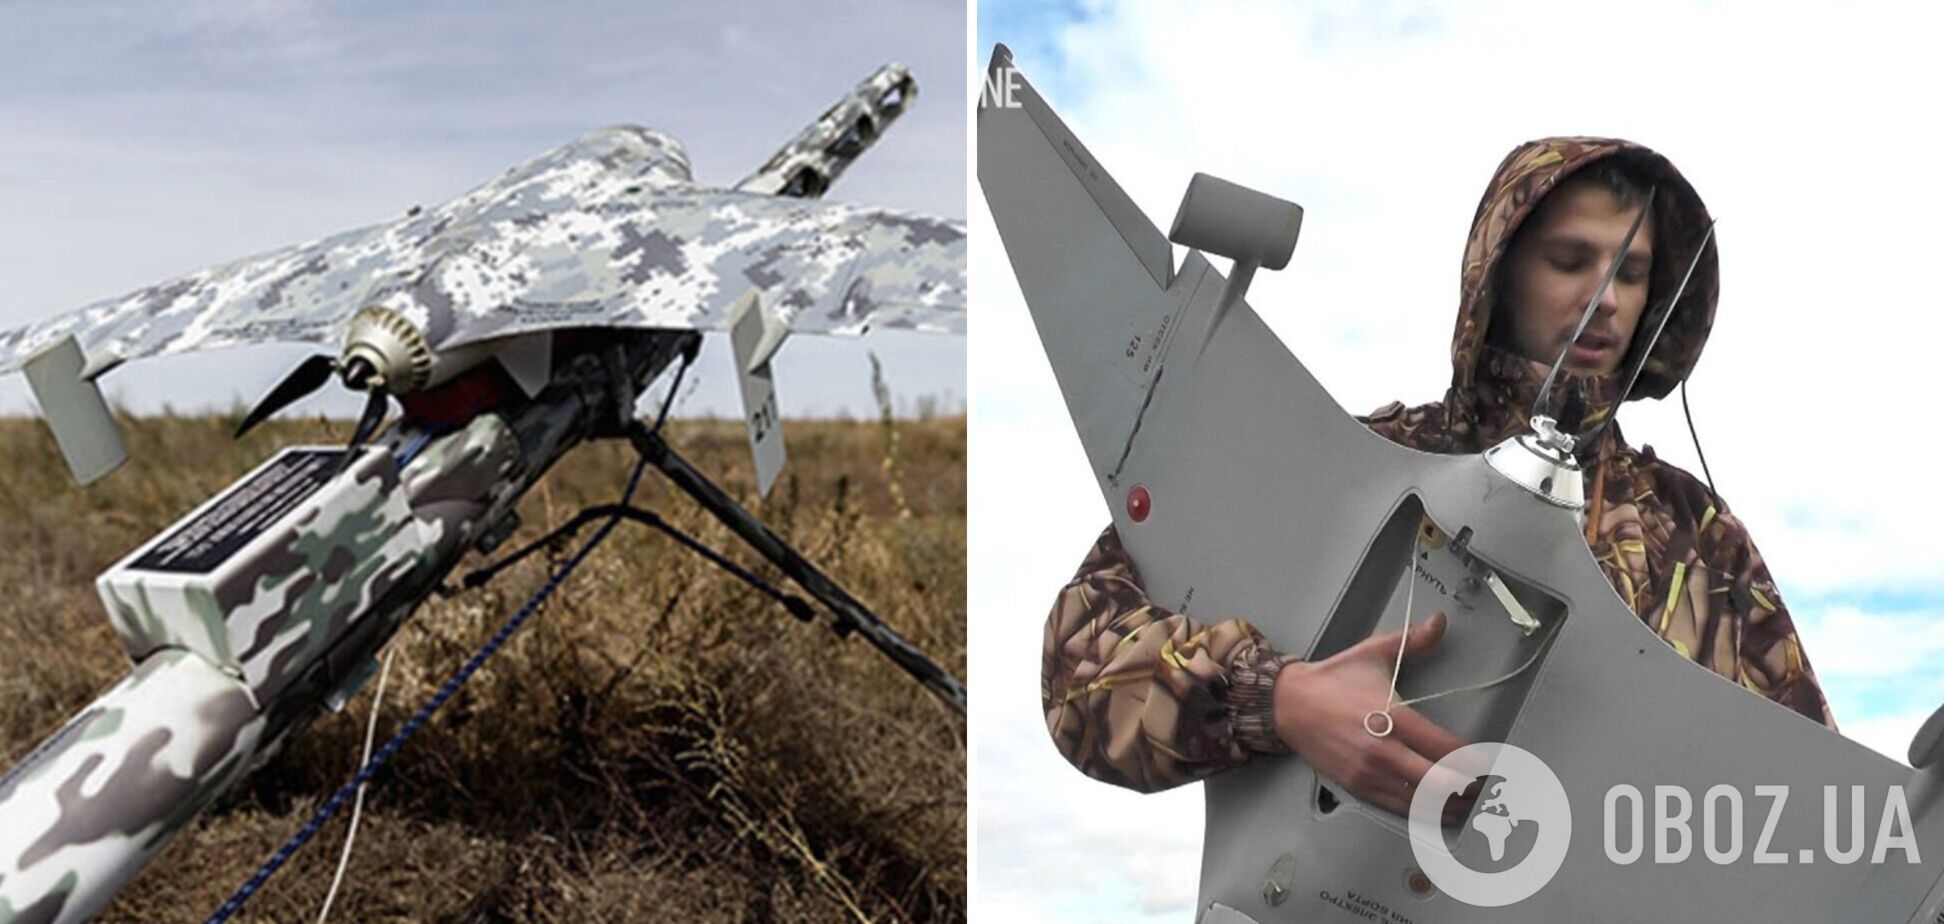 Защитники Украины 'приземлили' вражеский дрон 'Элерон-3СВ': стоит 146 тысяч долларов. Видео